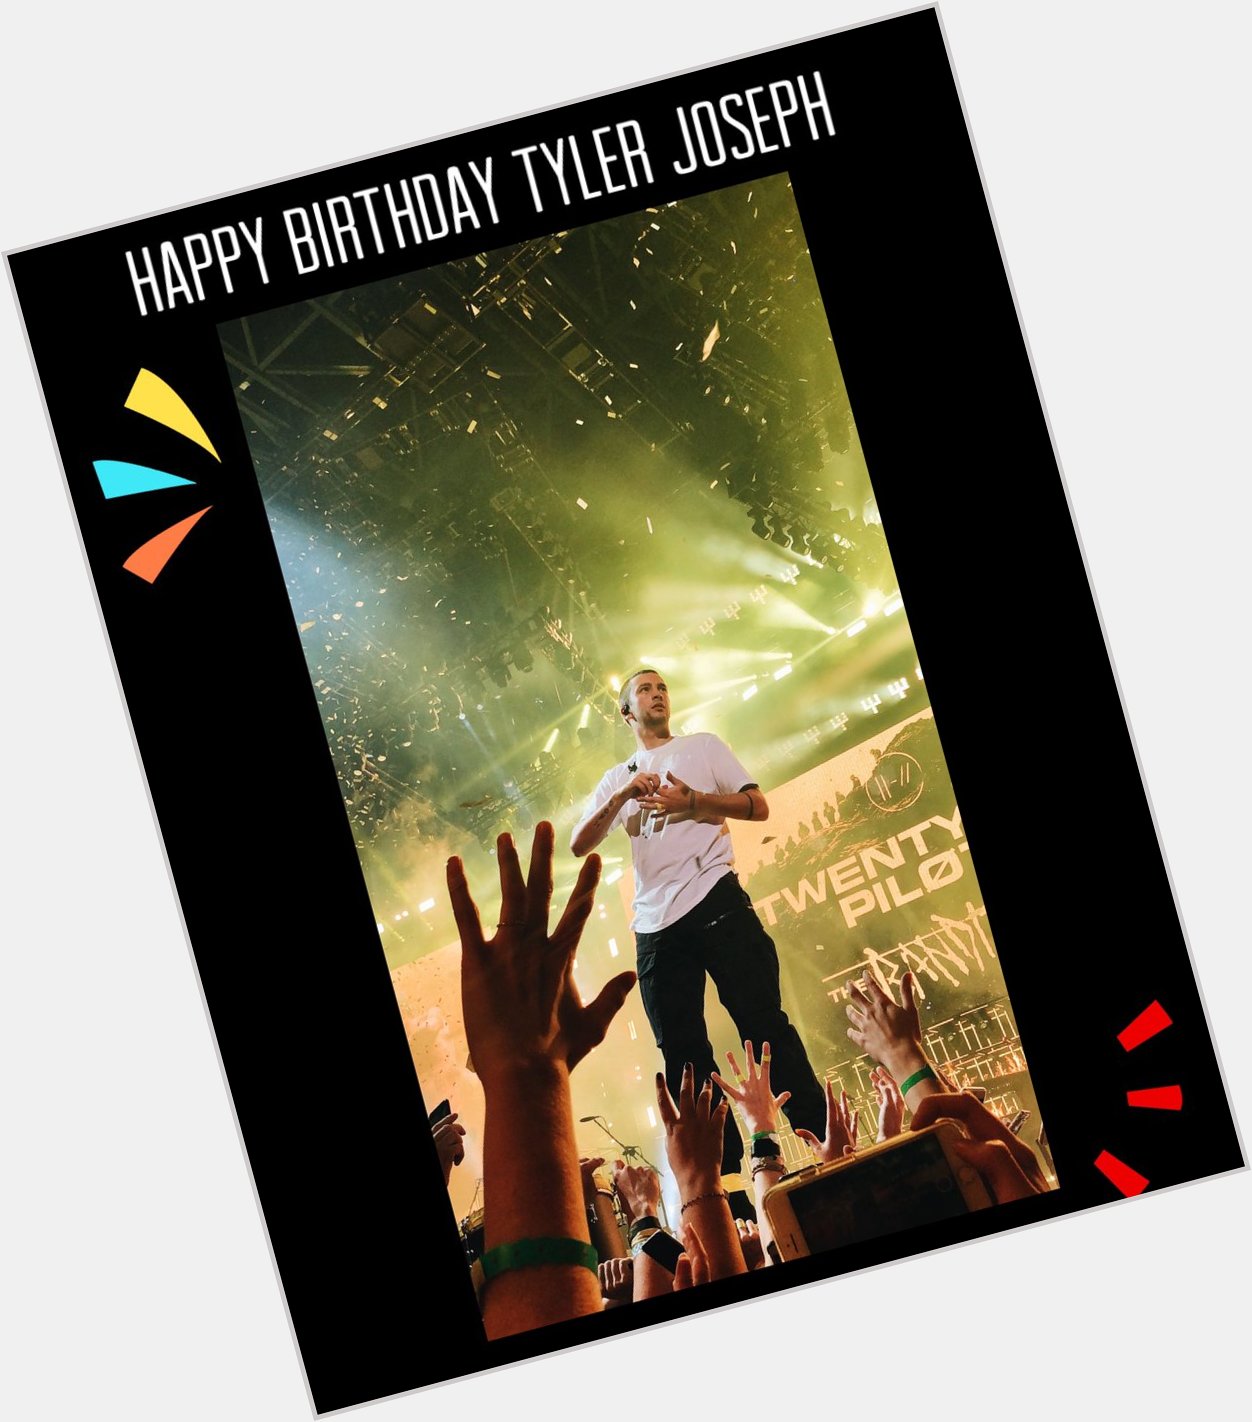 Happy Birthday     to Tyler Joseph   